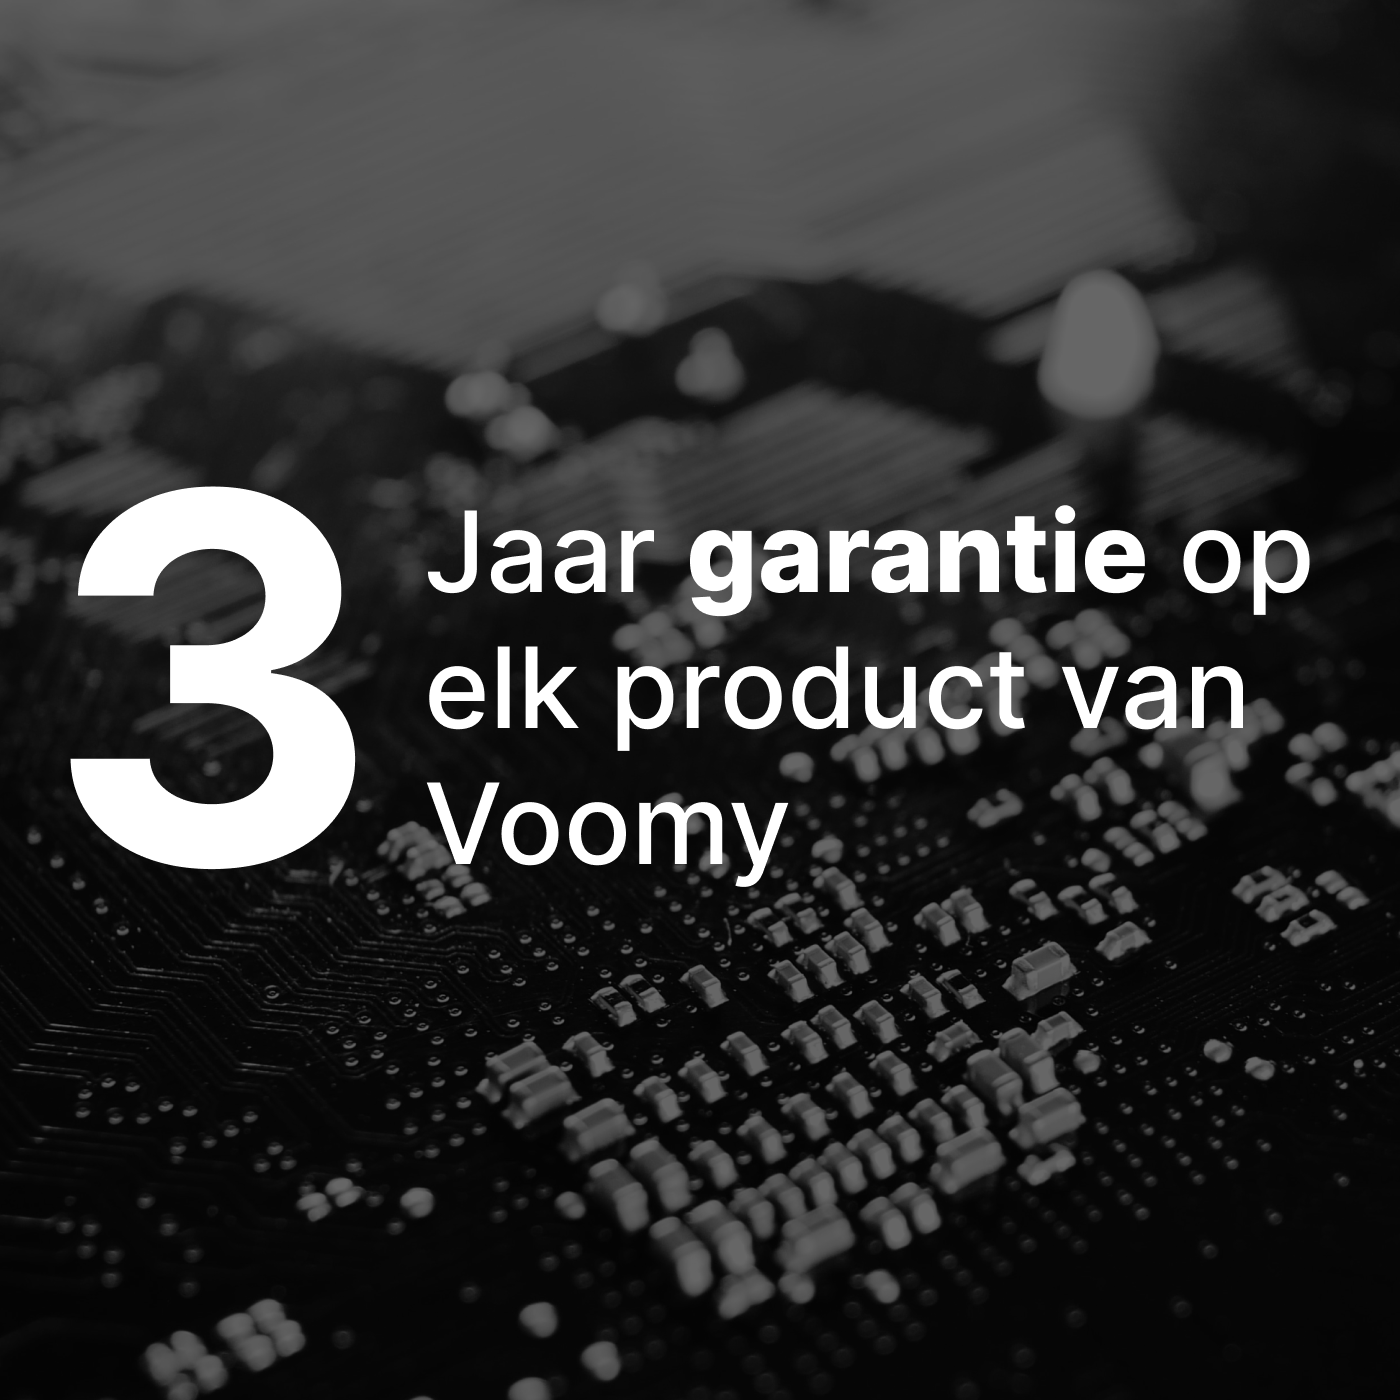 Elk product van Voomy is voorzien van een garantie van 3 jaar